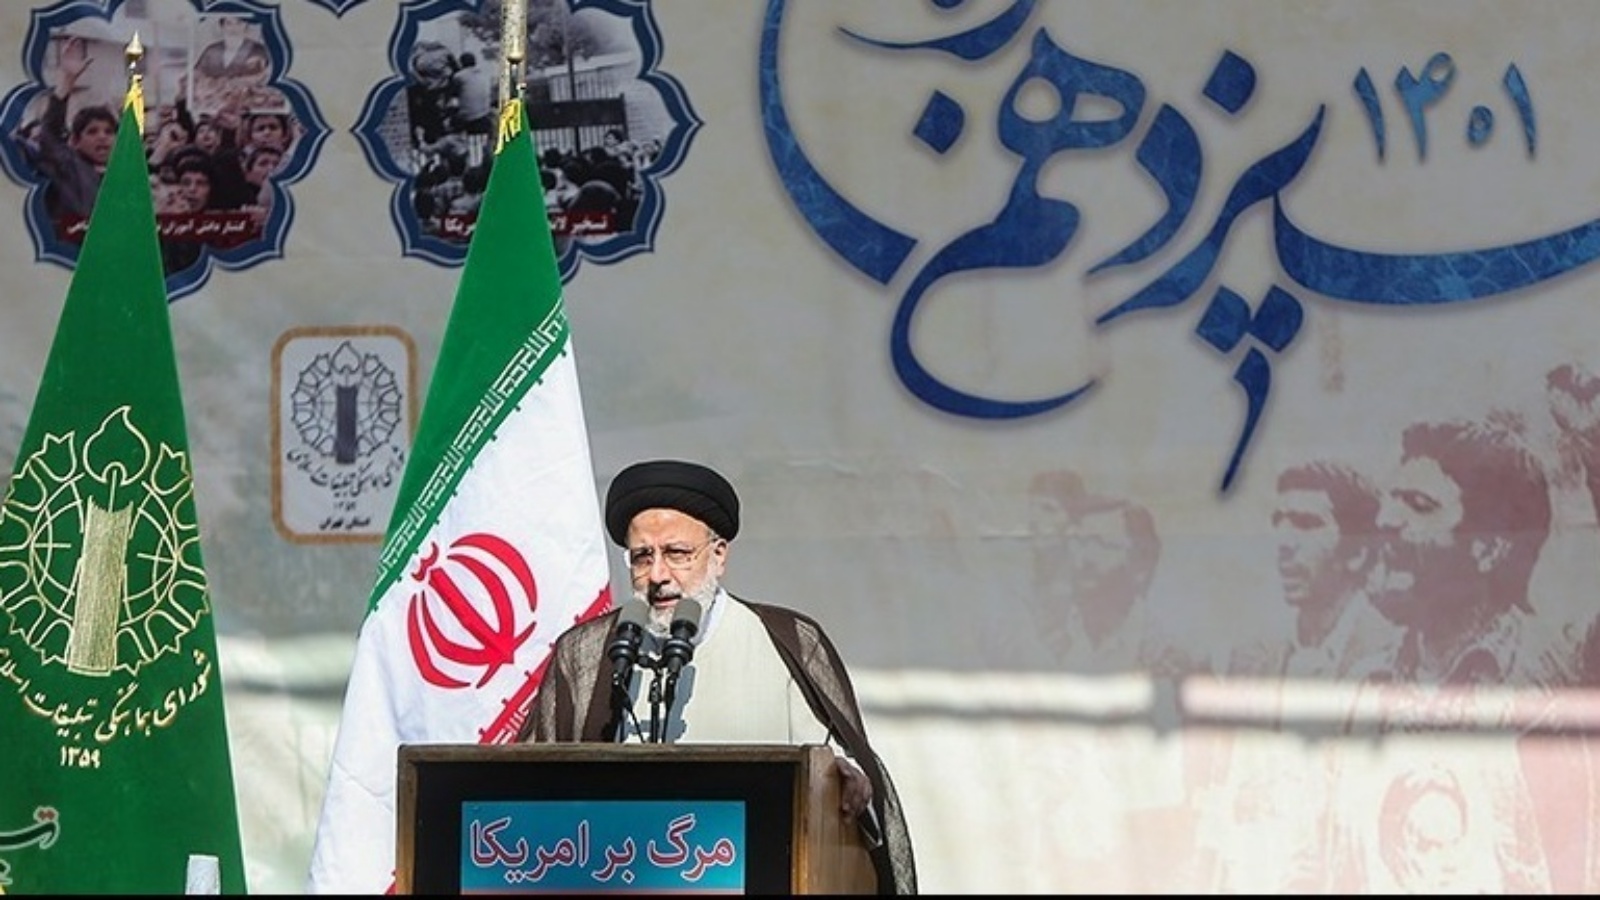 الرئيس الإيراني ابراهيم رئيسي يرد الجمعة 4 فبراير 2022 على تعهد بايدن بتحرير ايران (اعلام ايراني)